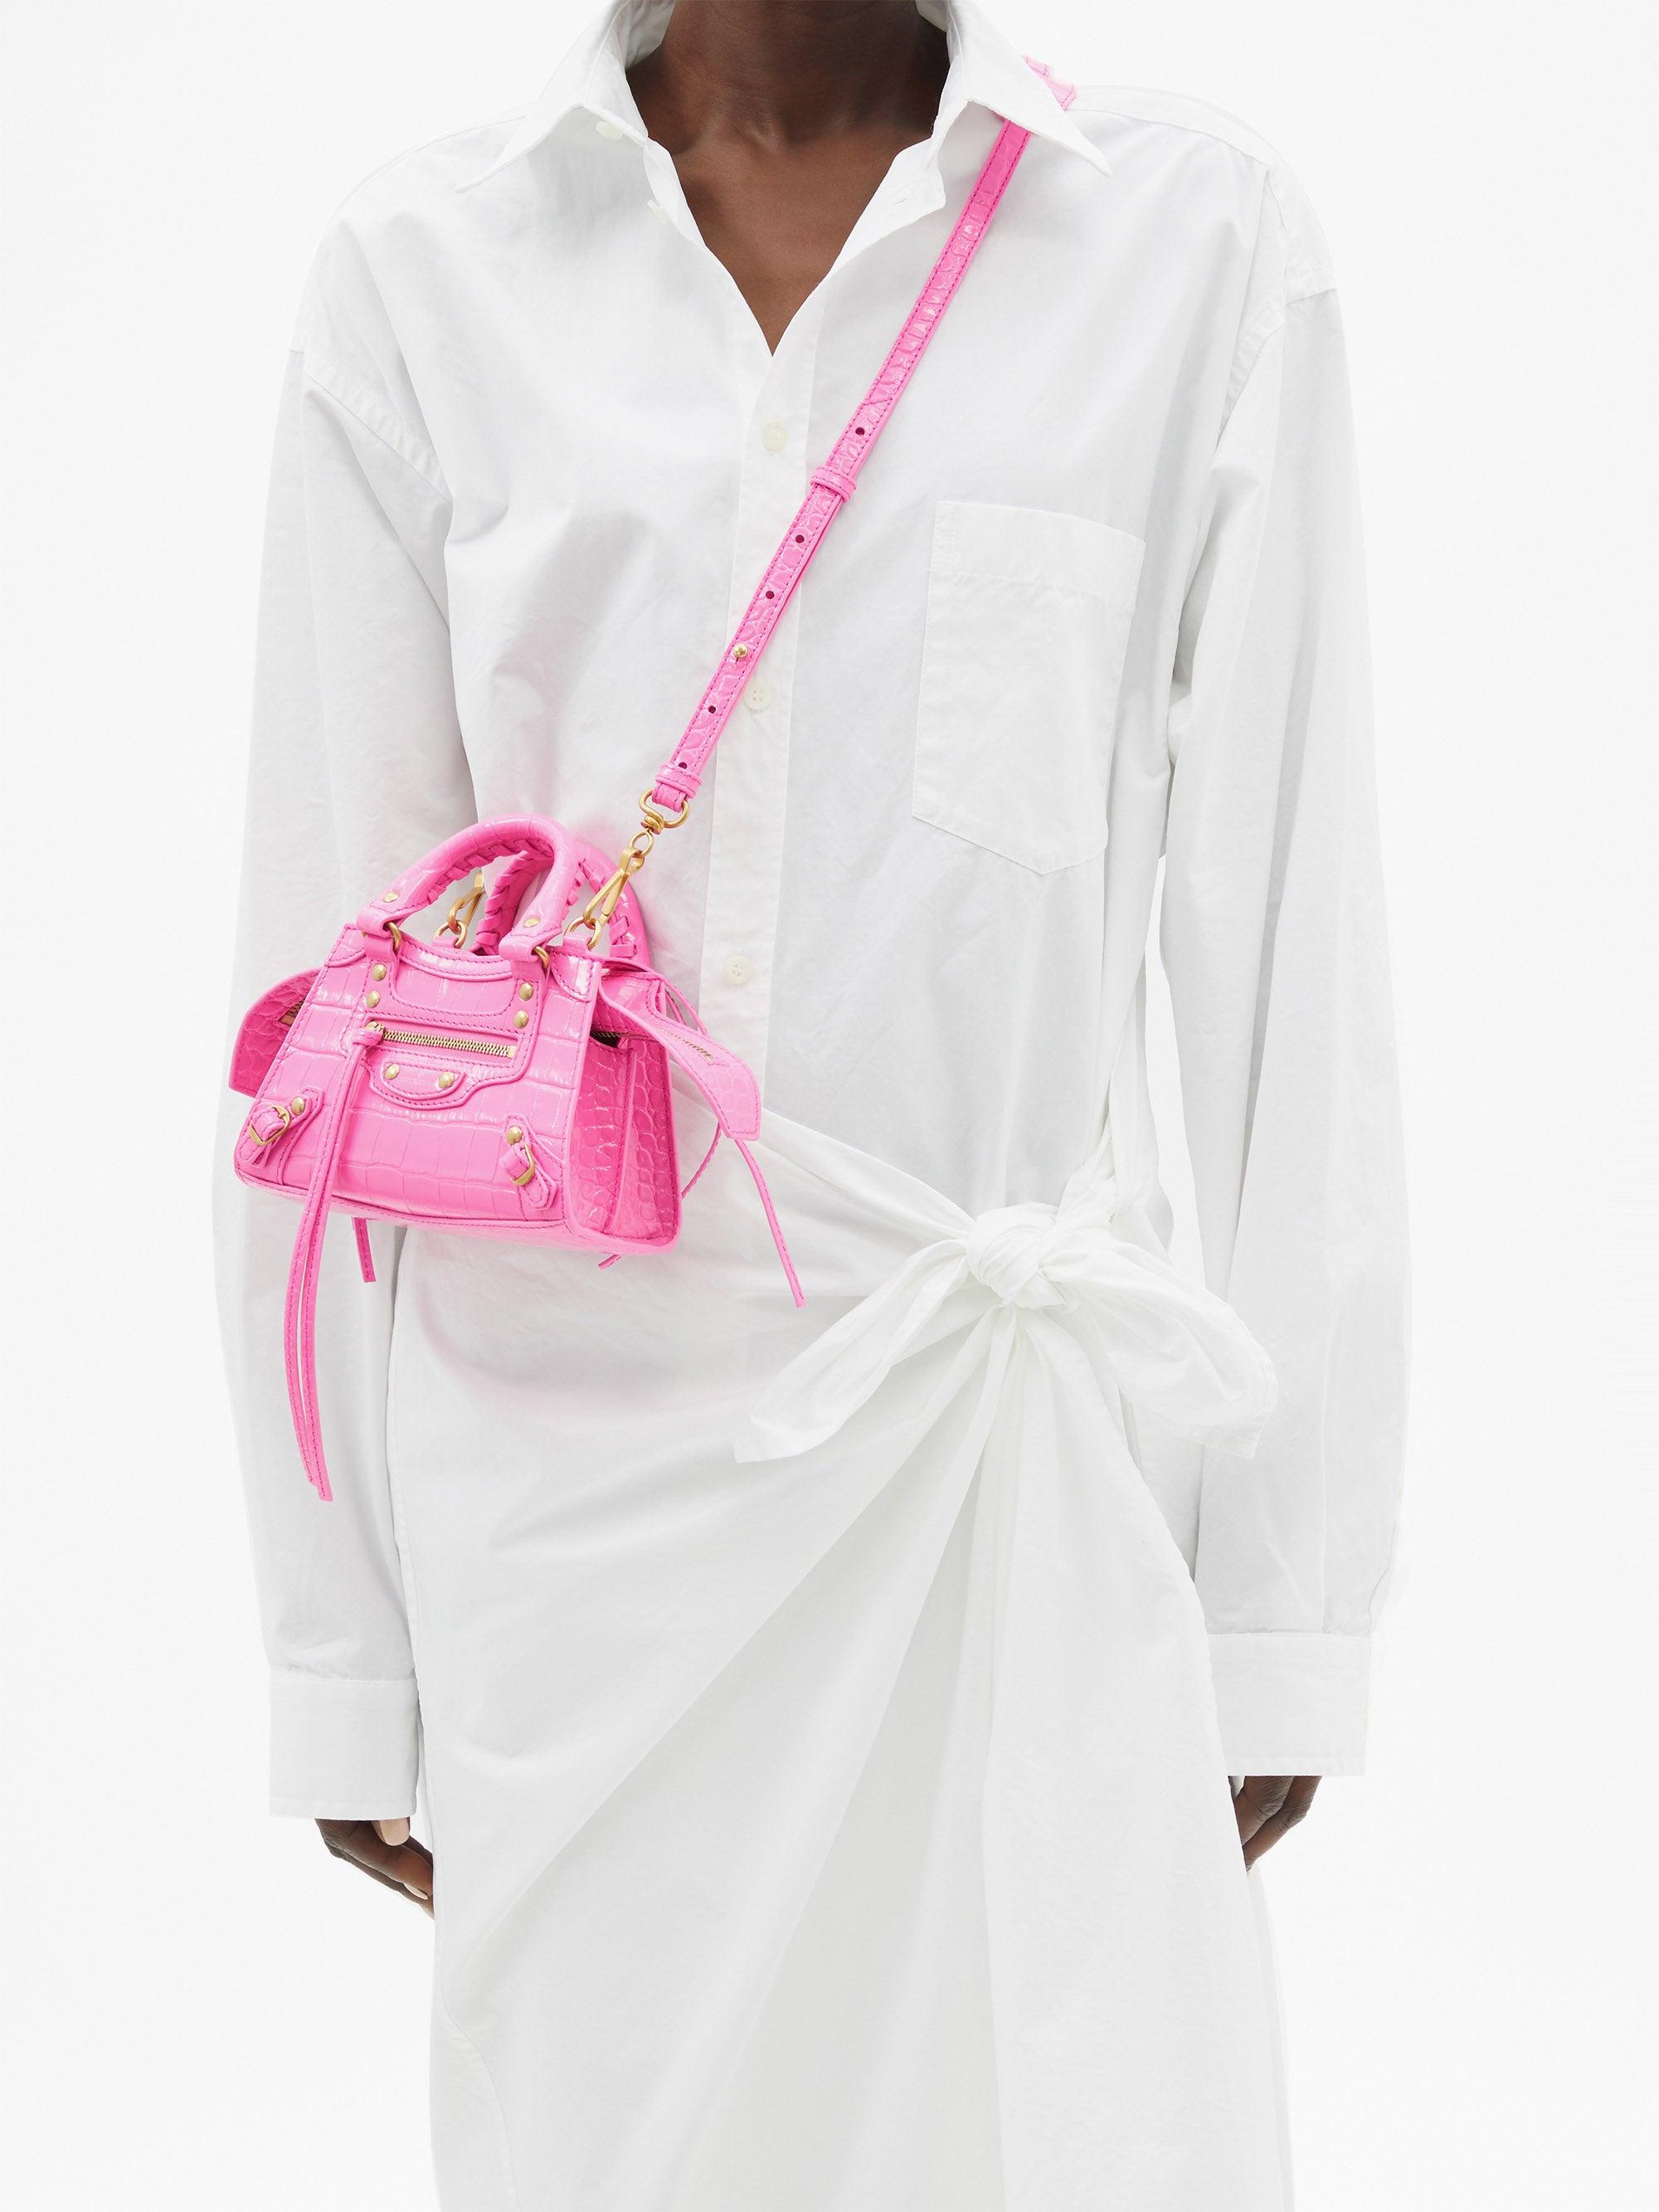 Balenciaga Neo Classic Mini Top Handle Bag in Pink